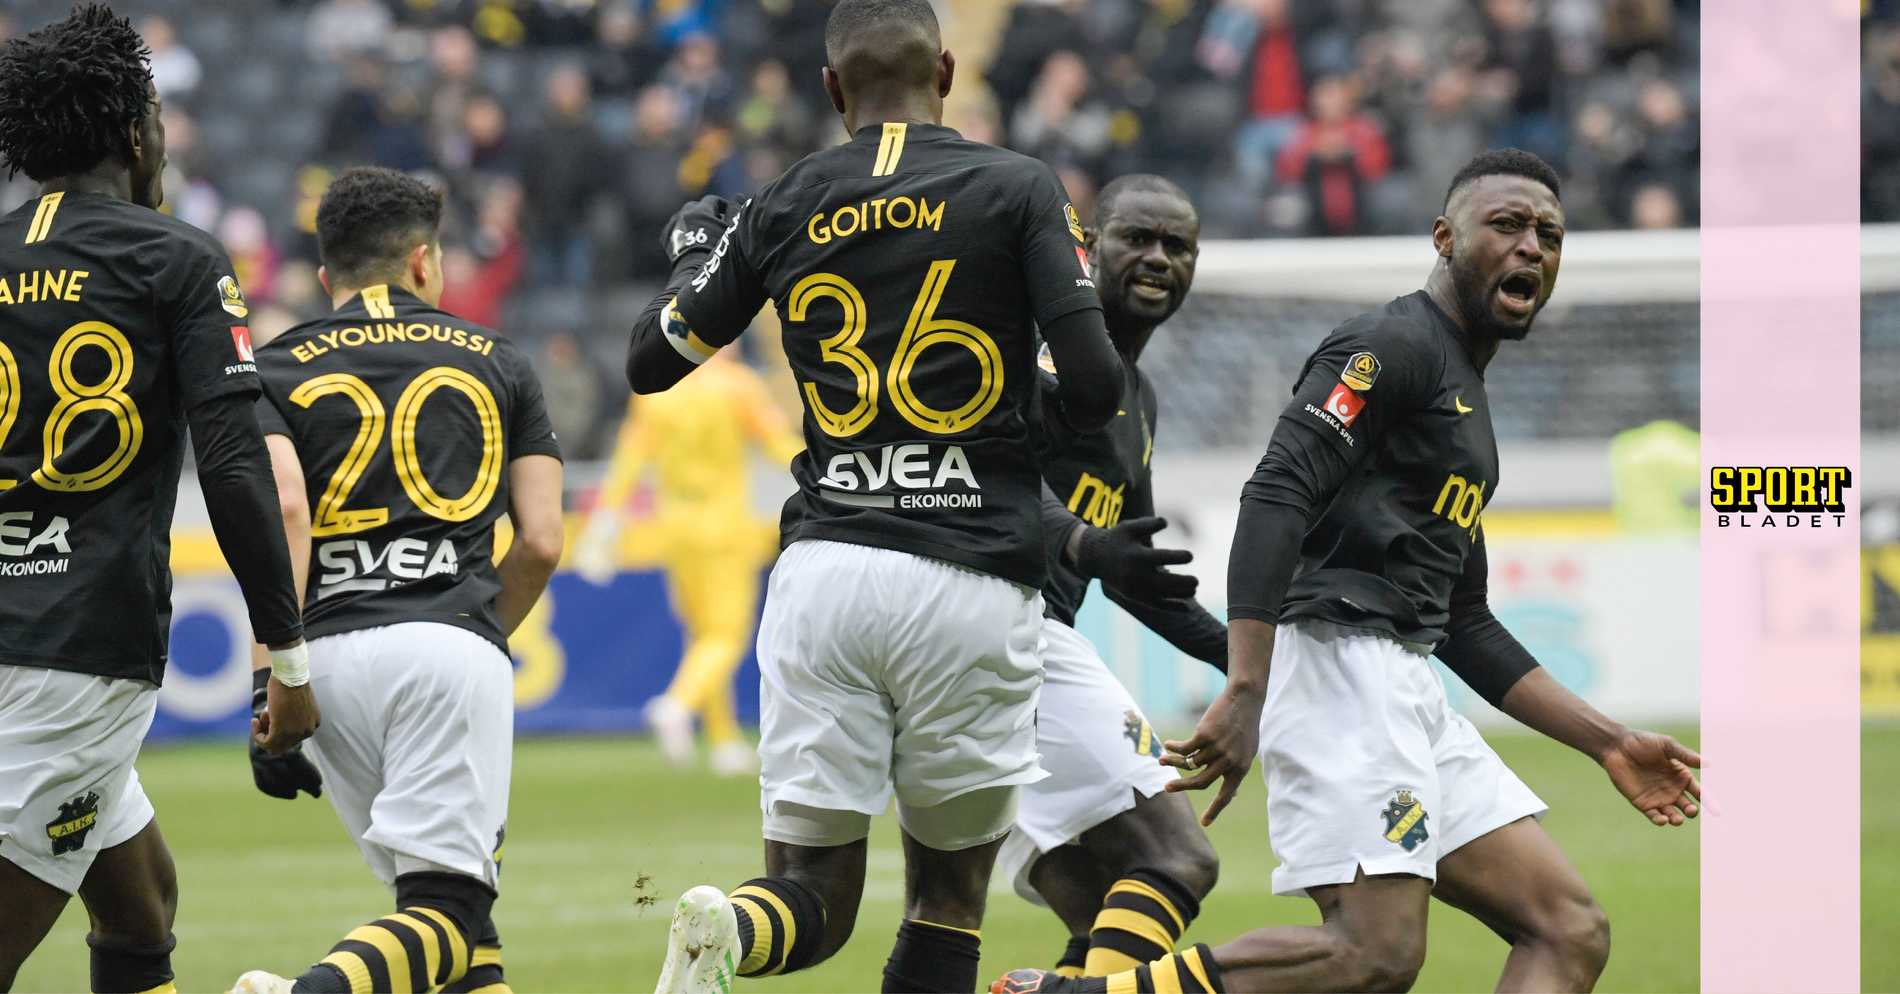 AIK Fotboll: Kritiken mot Lahnes firande: ”Inte snyggt”